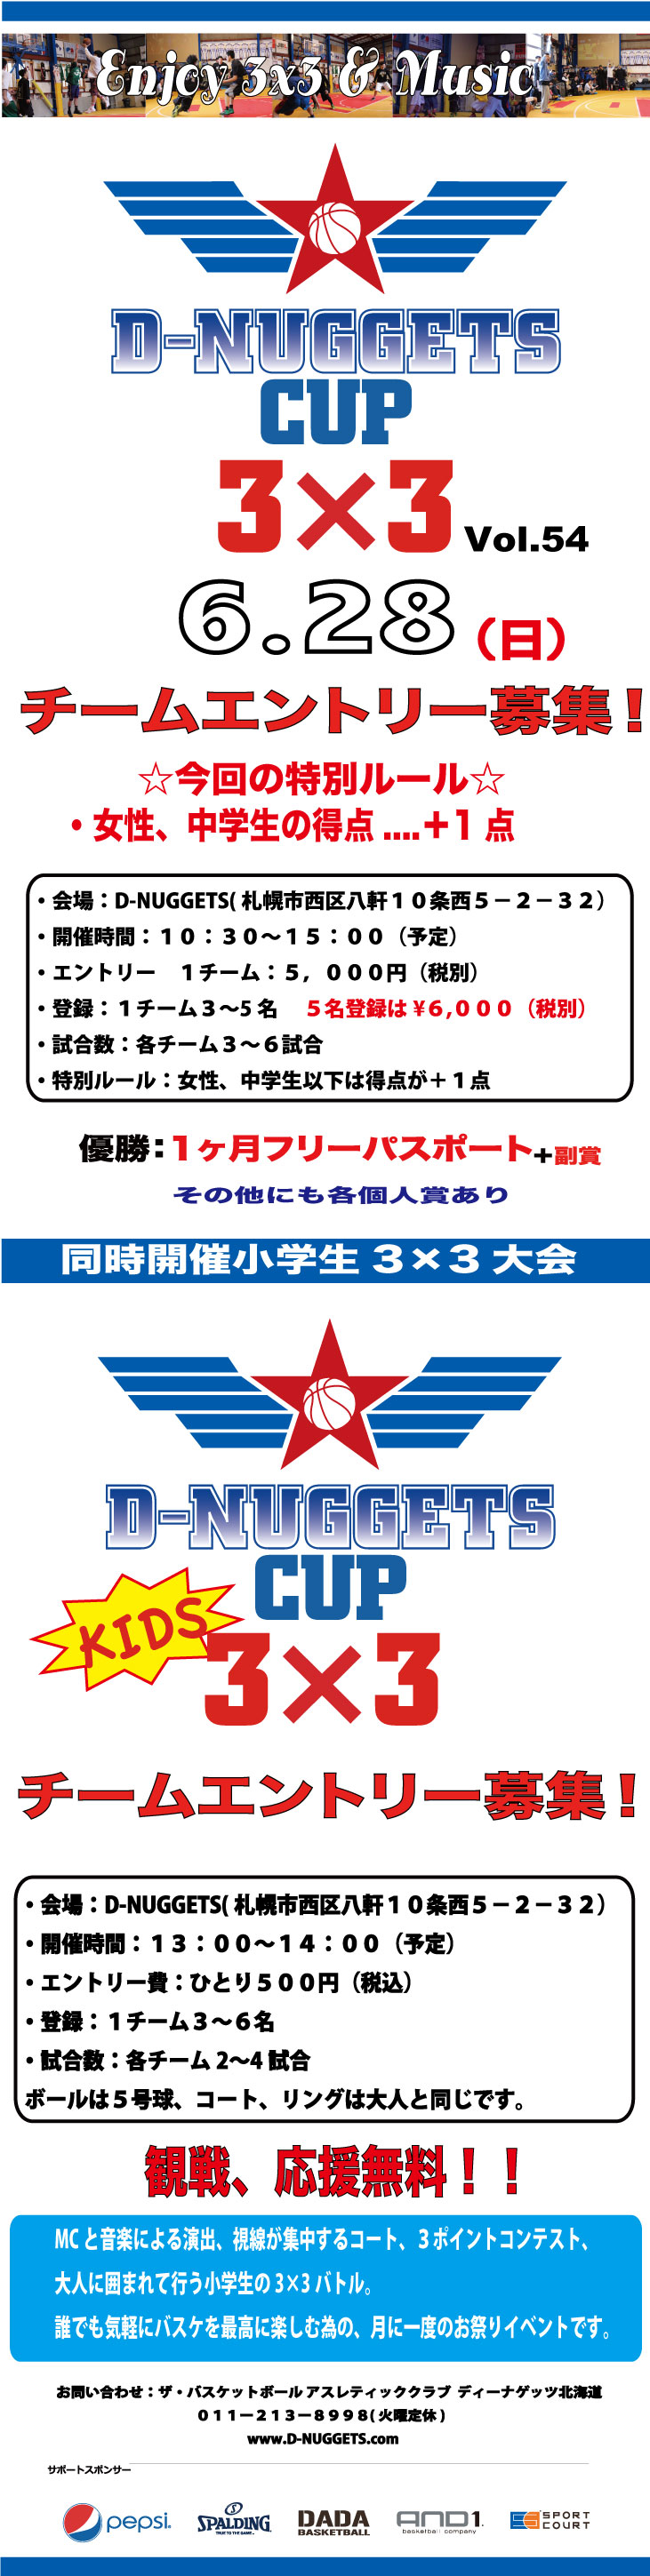 D-NUGGETS-CUP-Vol.54.jpg